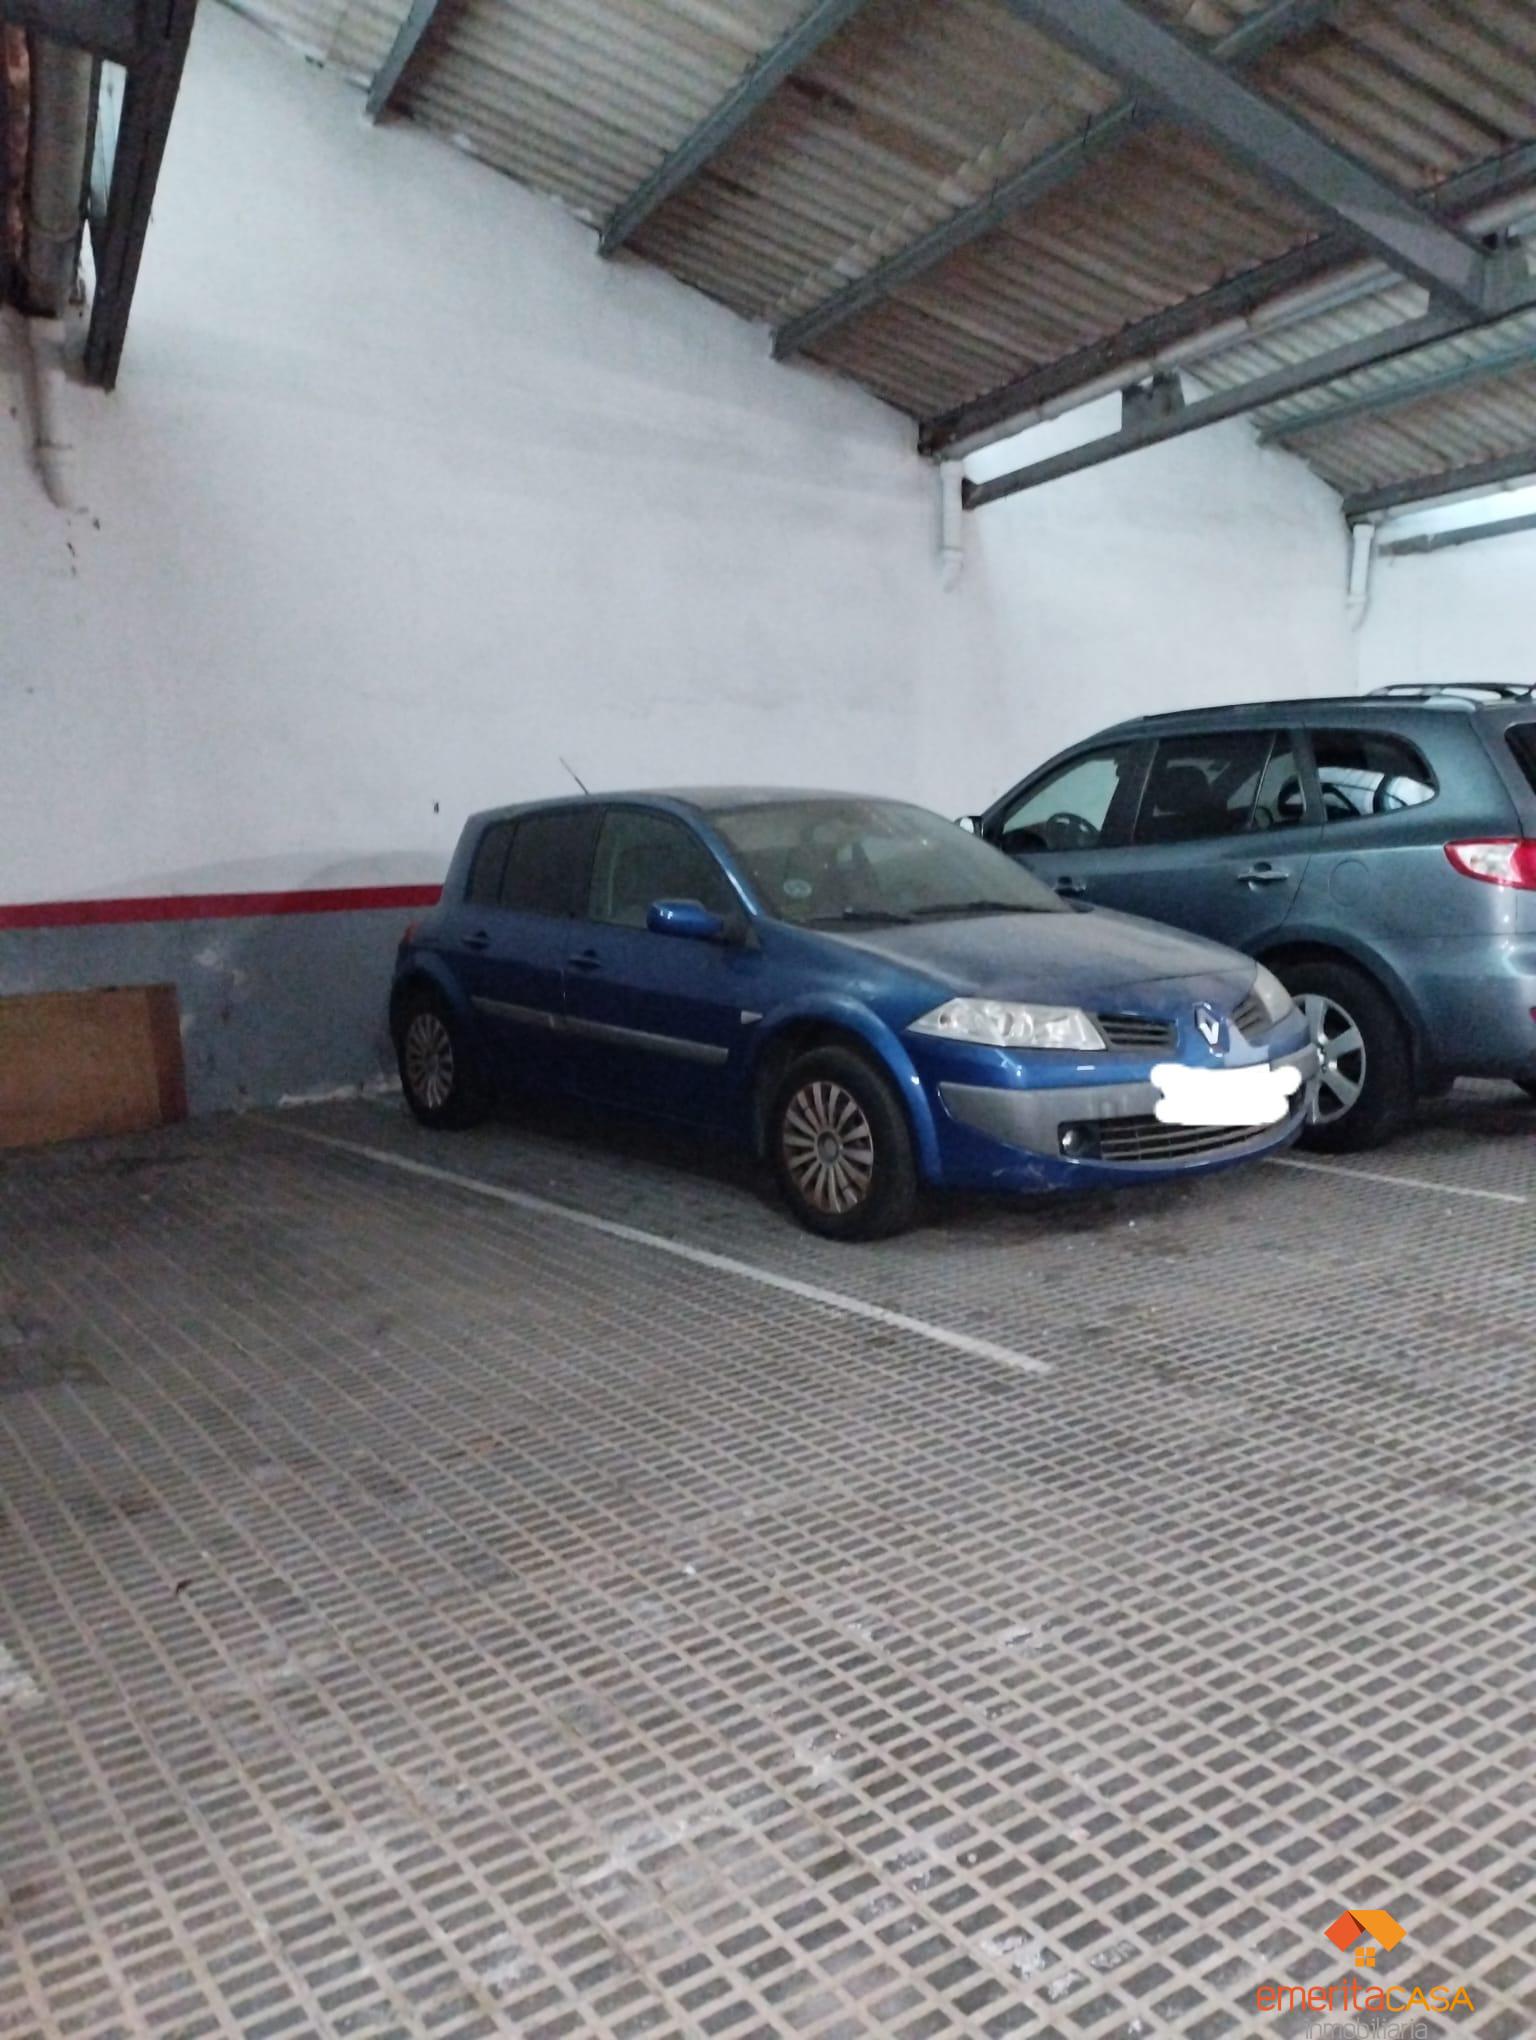 For sale of garage in Mérida